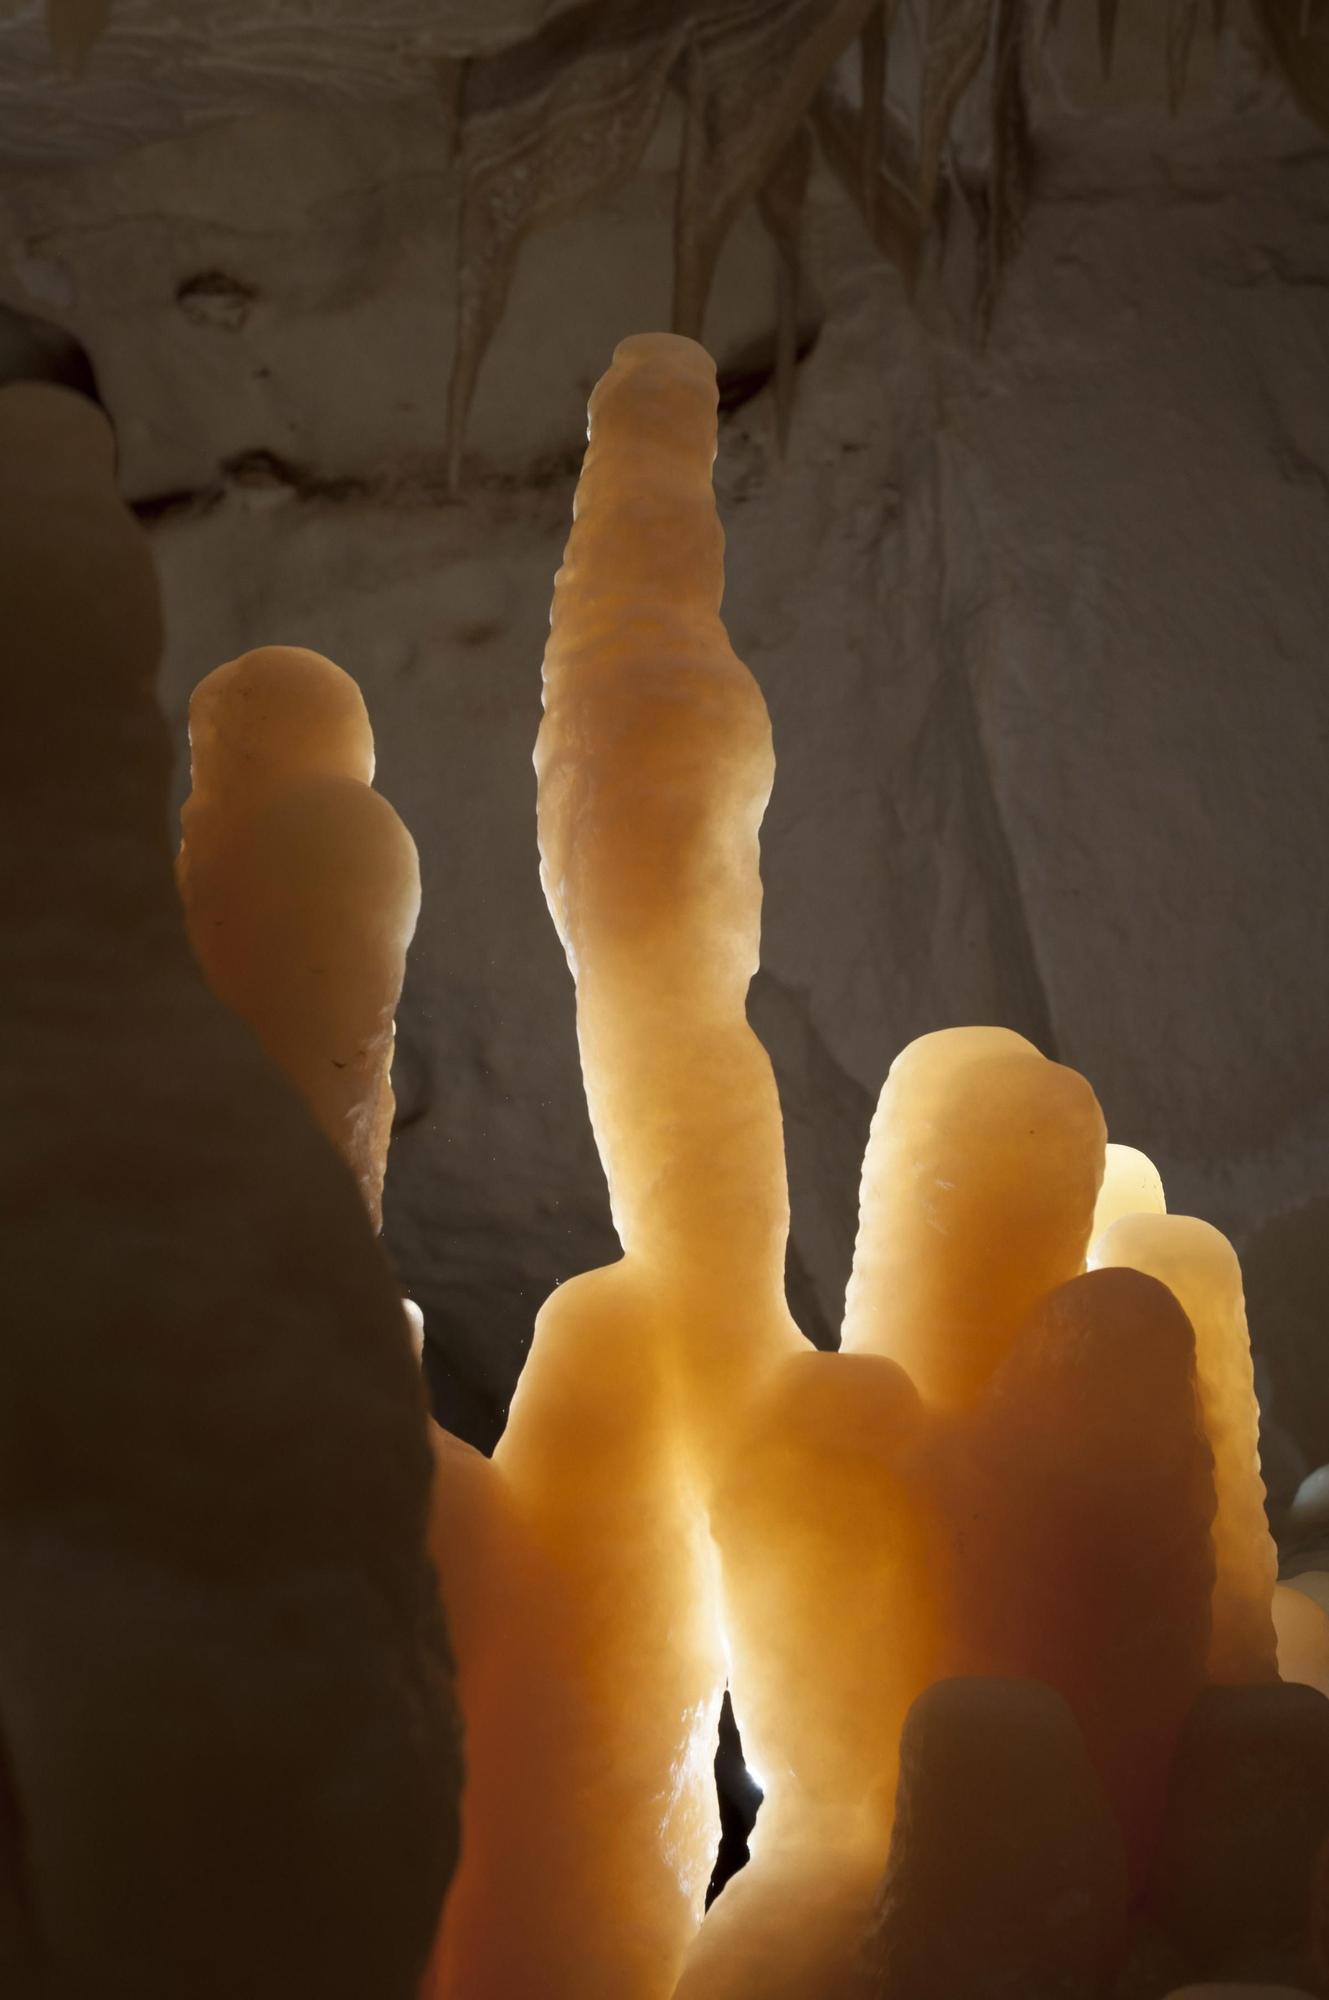 La cueva del Pas de Vallgornera, la 'Catedral' subterránea de Mallorca, en imágenes